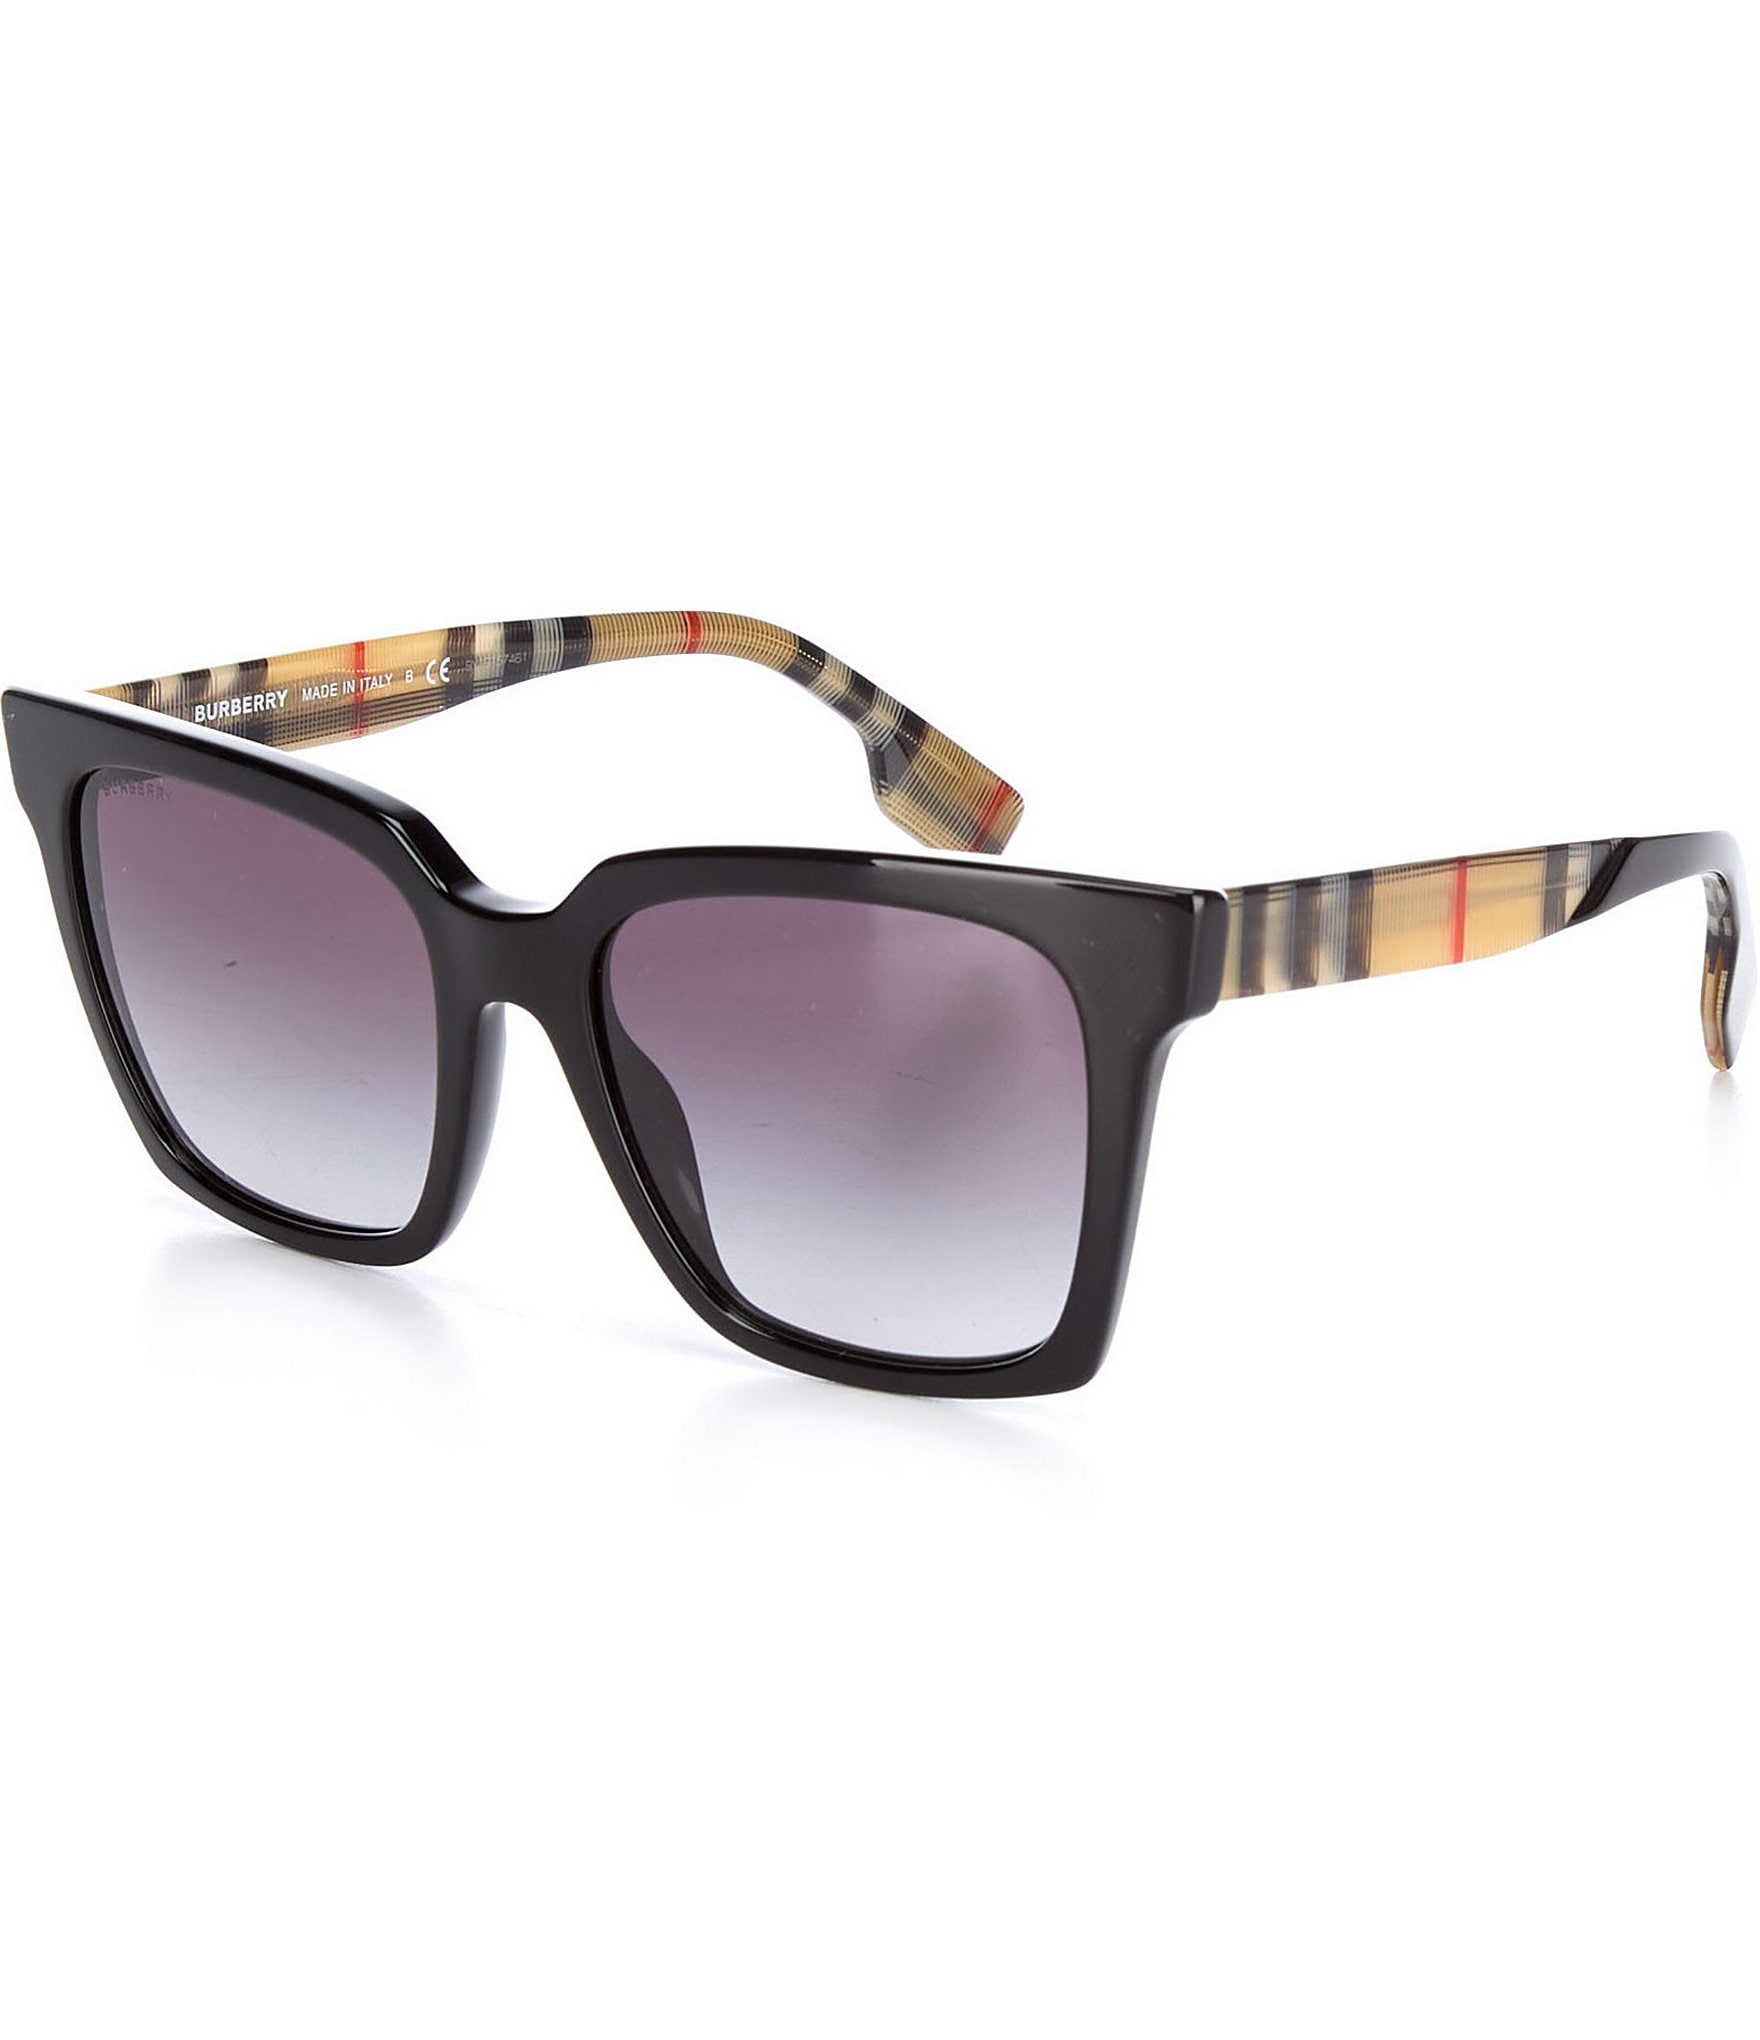 Actualizar 40+ imagen burberry sunglasses sale